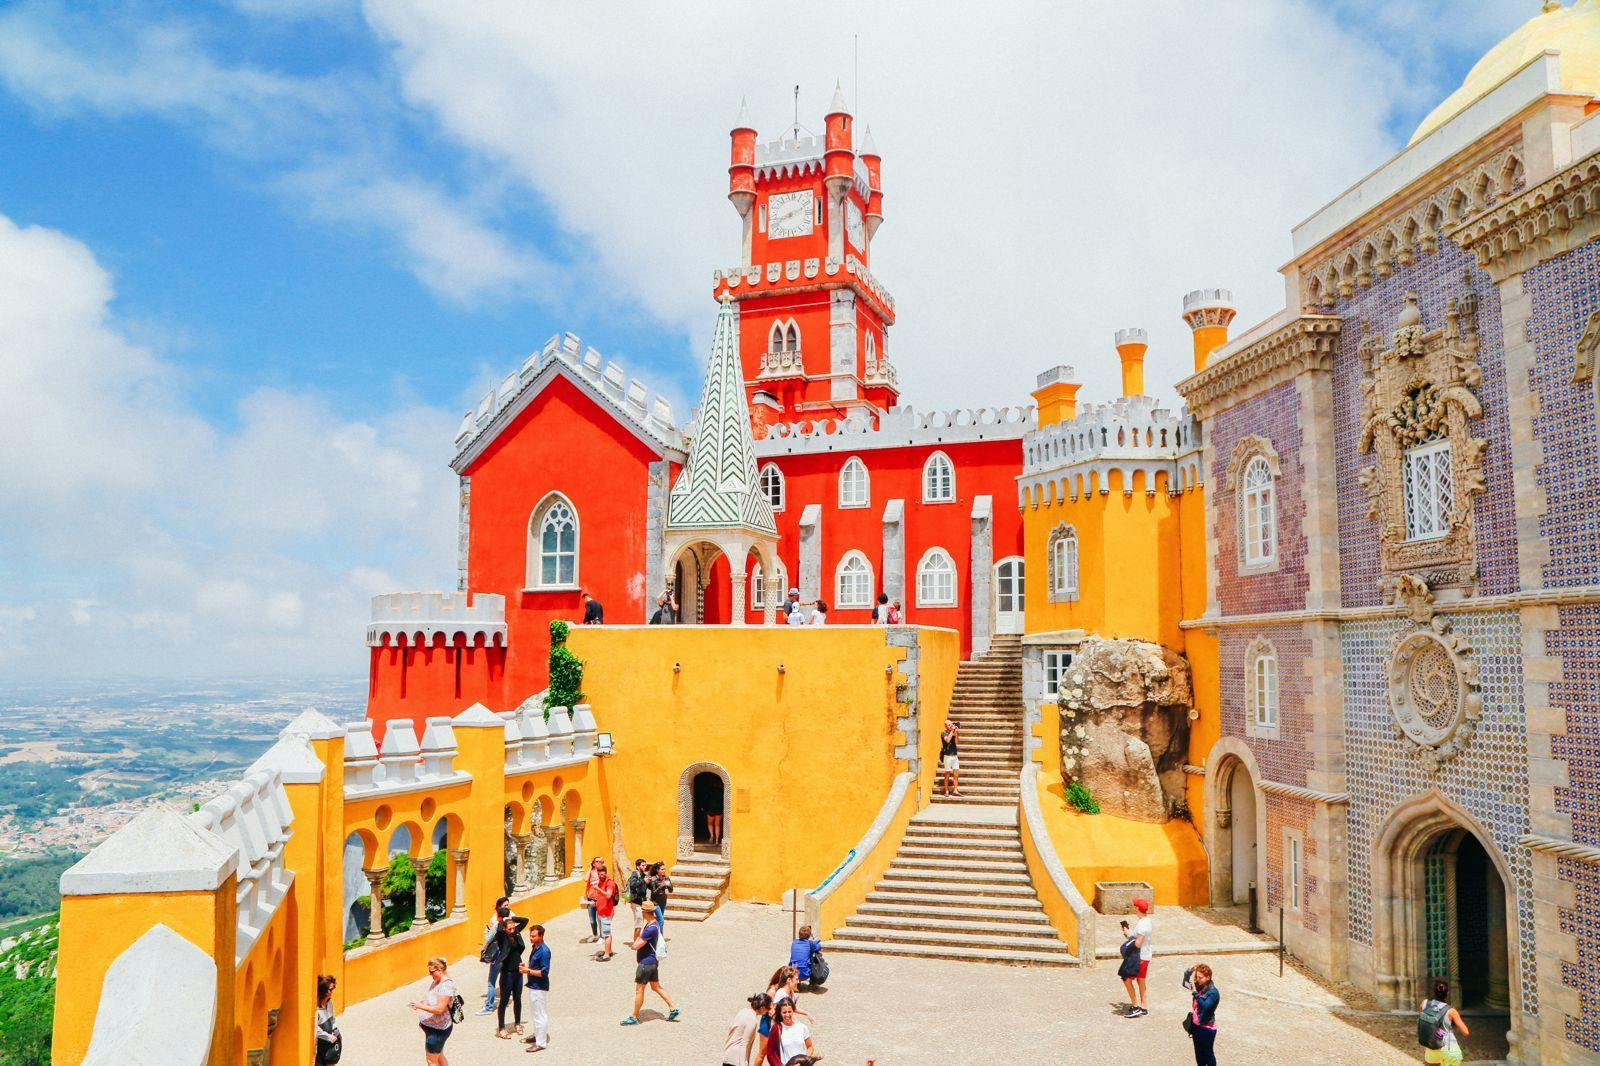 Le beau château de Sintra pendant le festival annuel de Sintra.